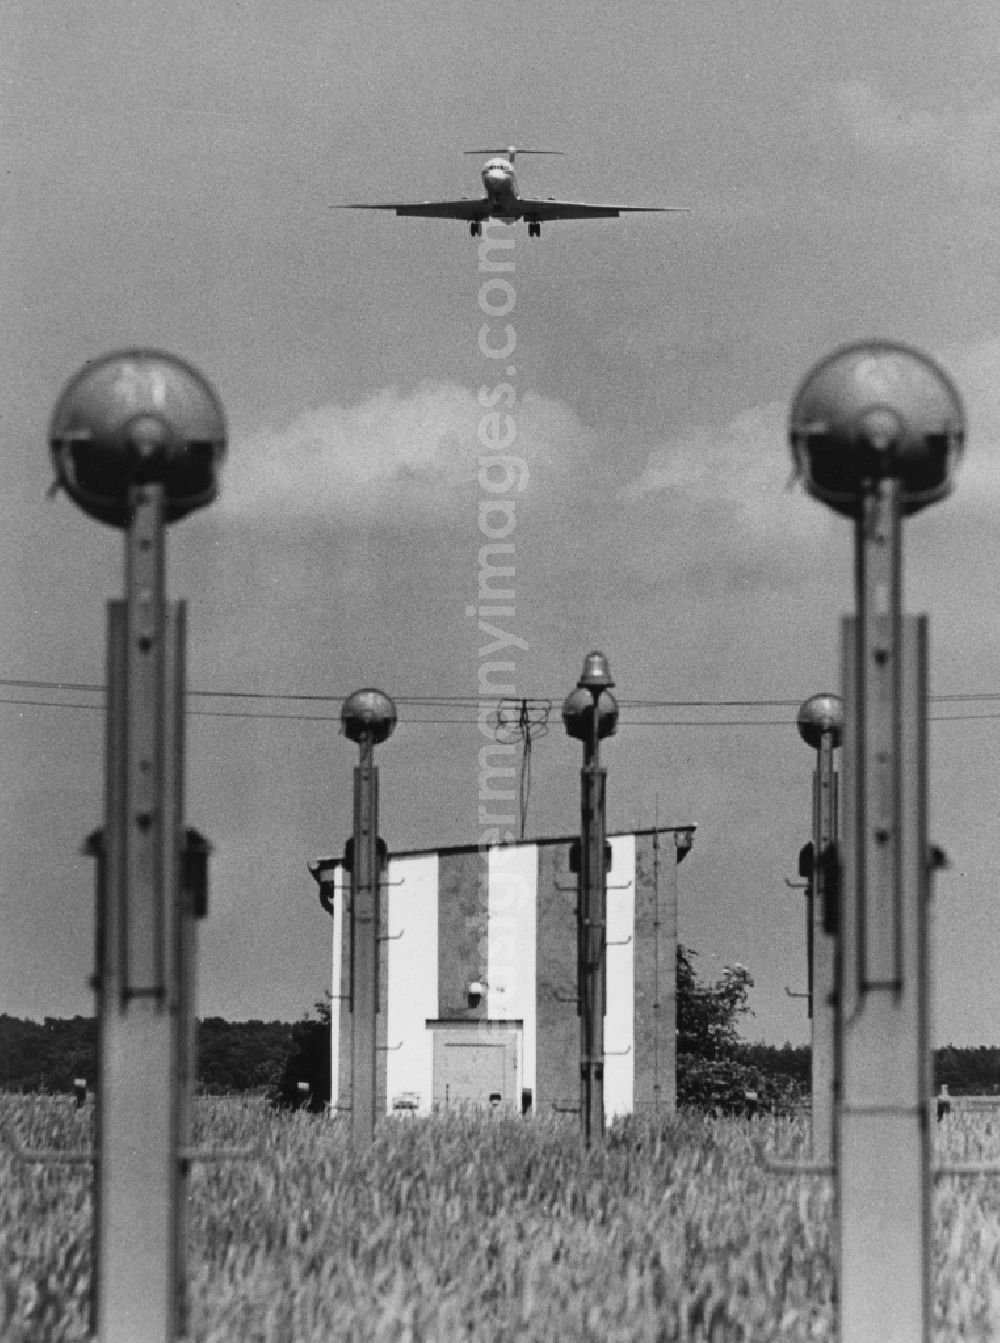 GDR image archive: Schönefeld - Landing of an IL-62 in Schoenefeld in Brandenburg